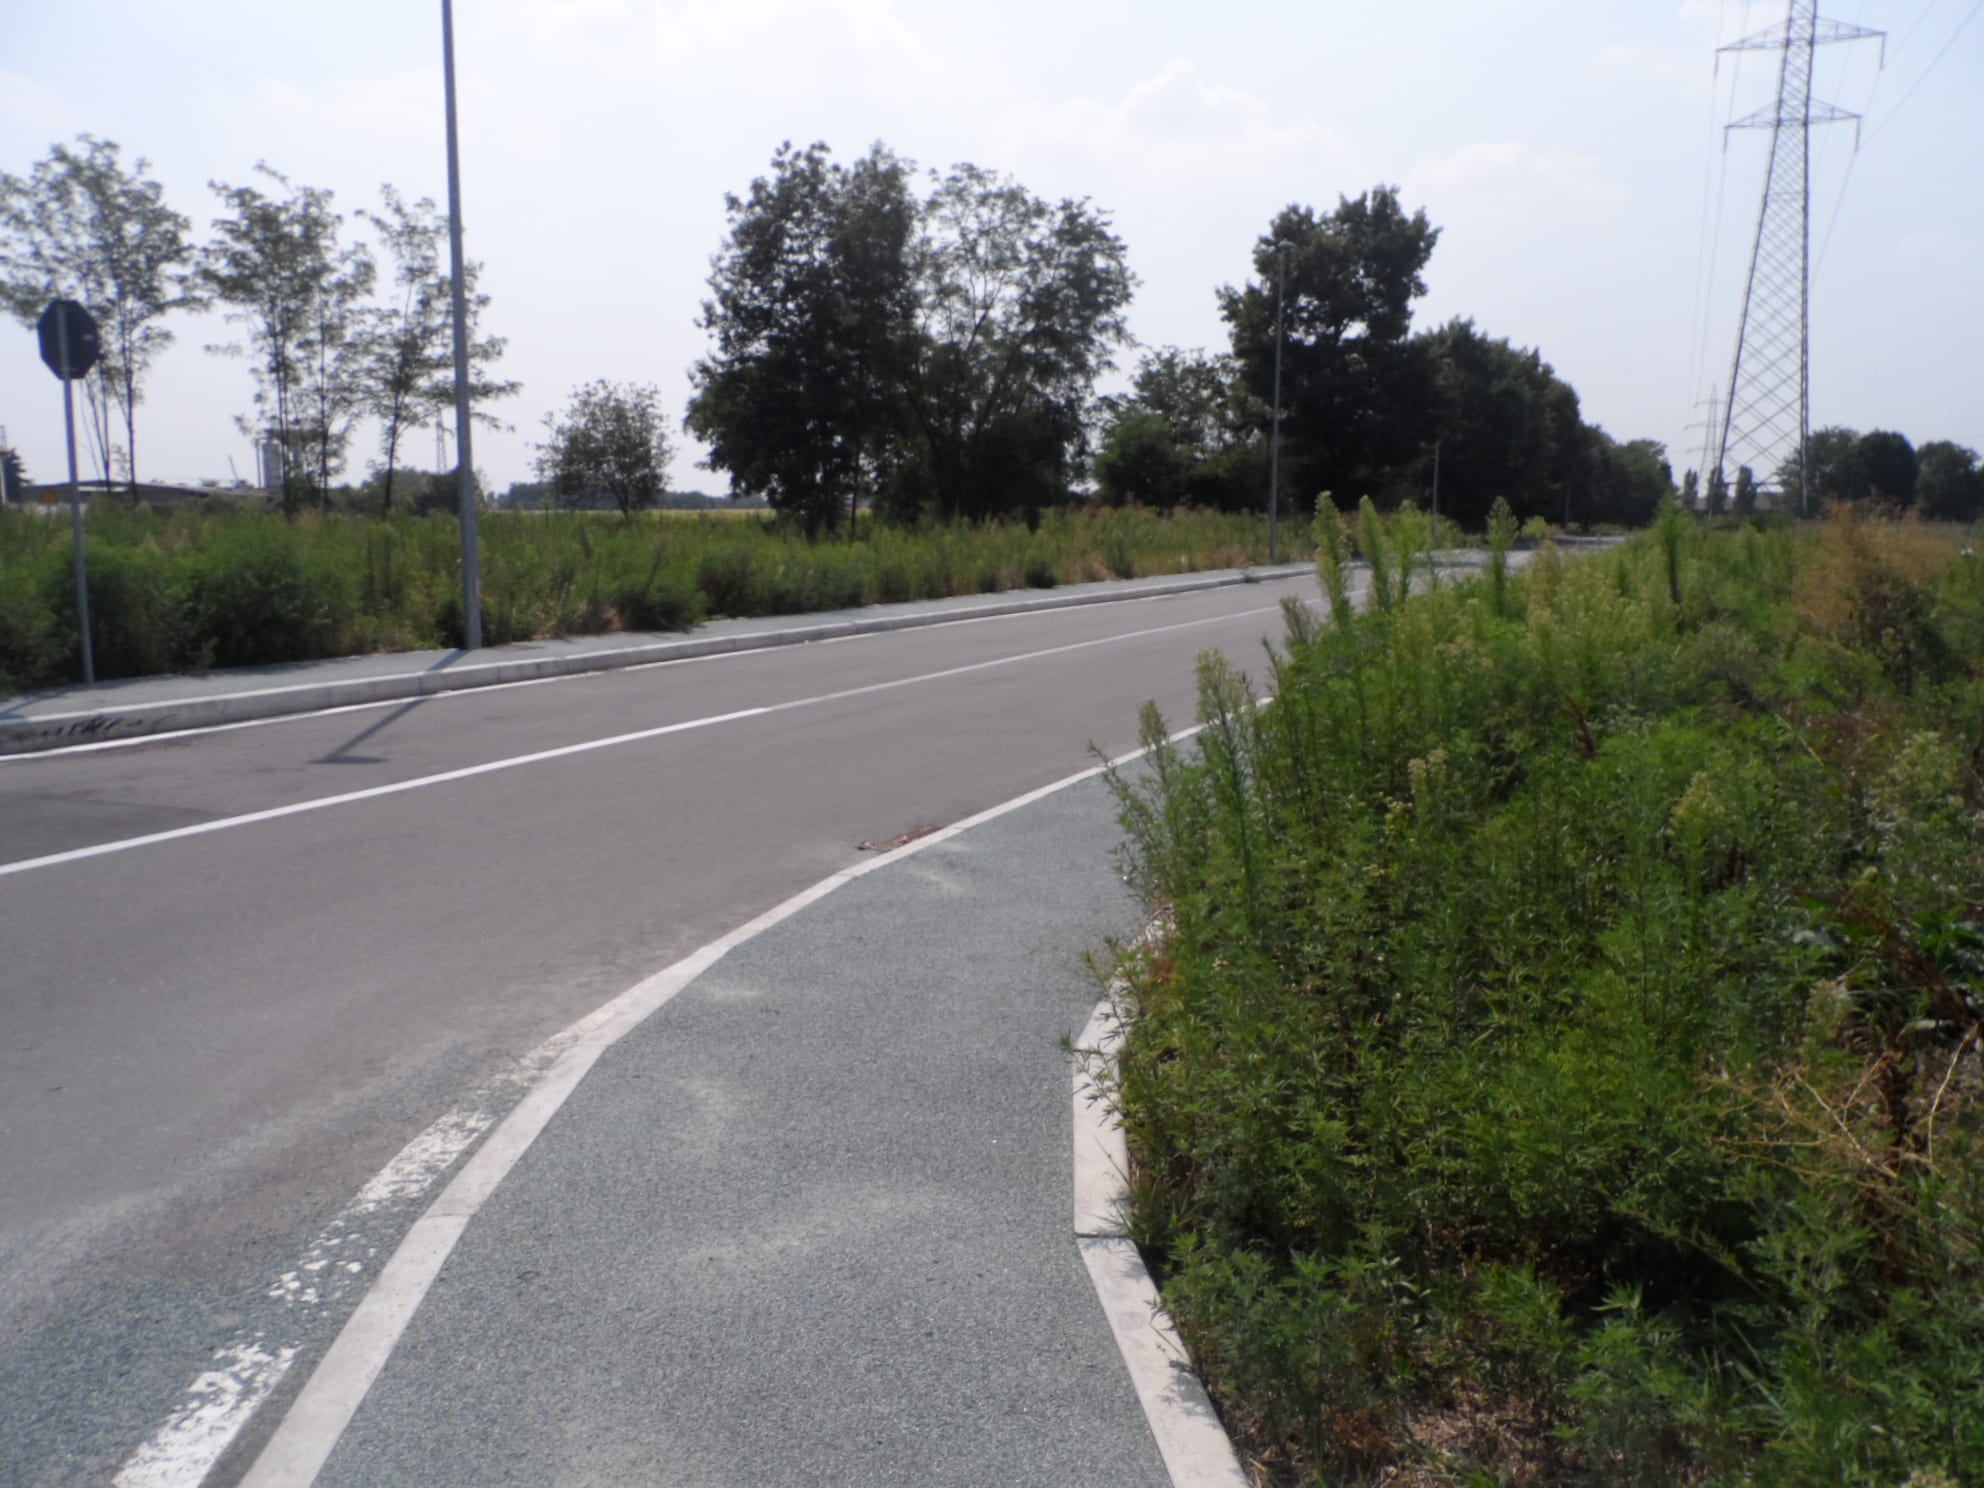 Letto di foglie sull’asfalto, ciclista vola a terra a “Saronno sud”